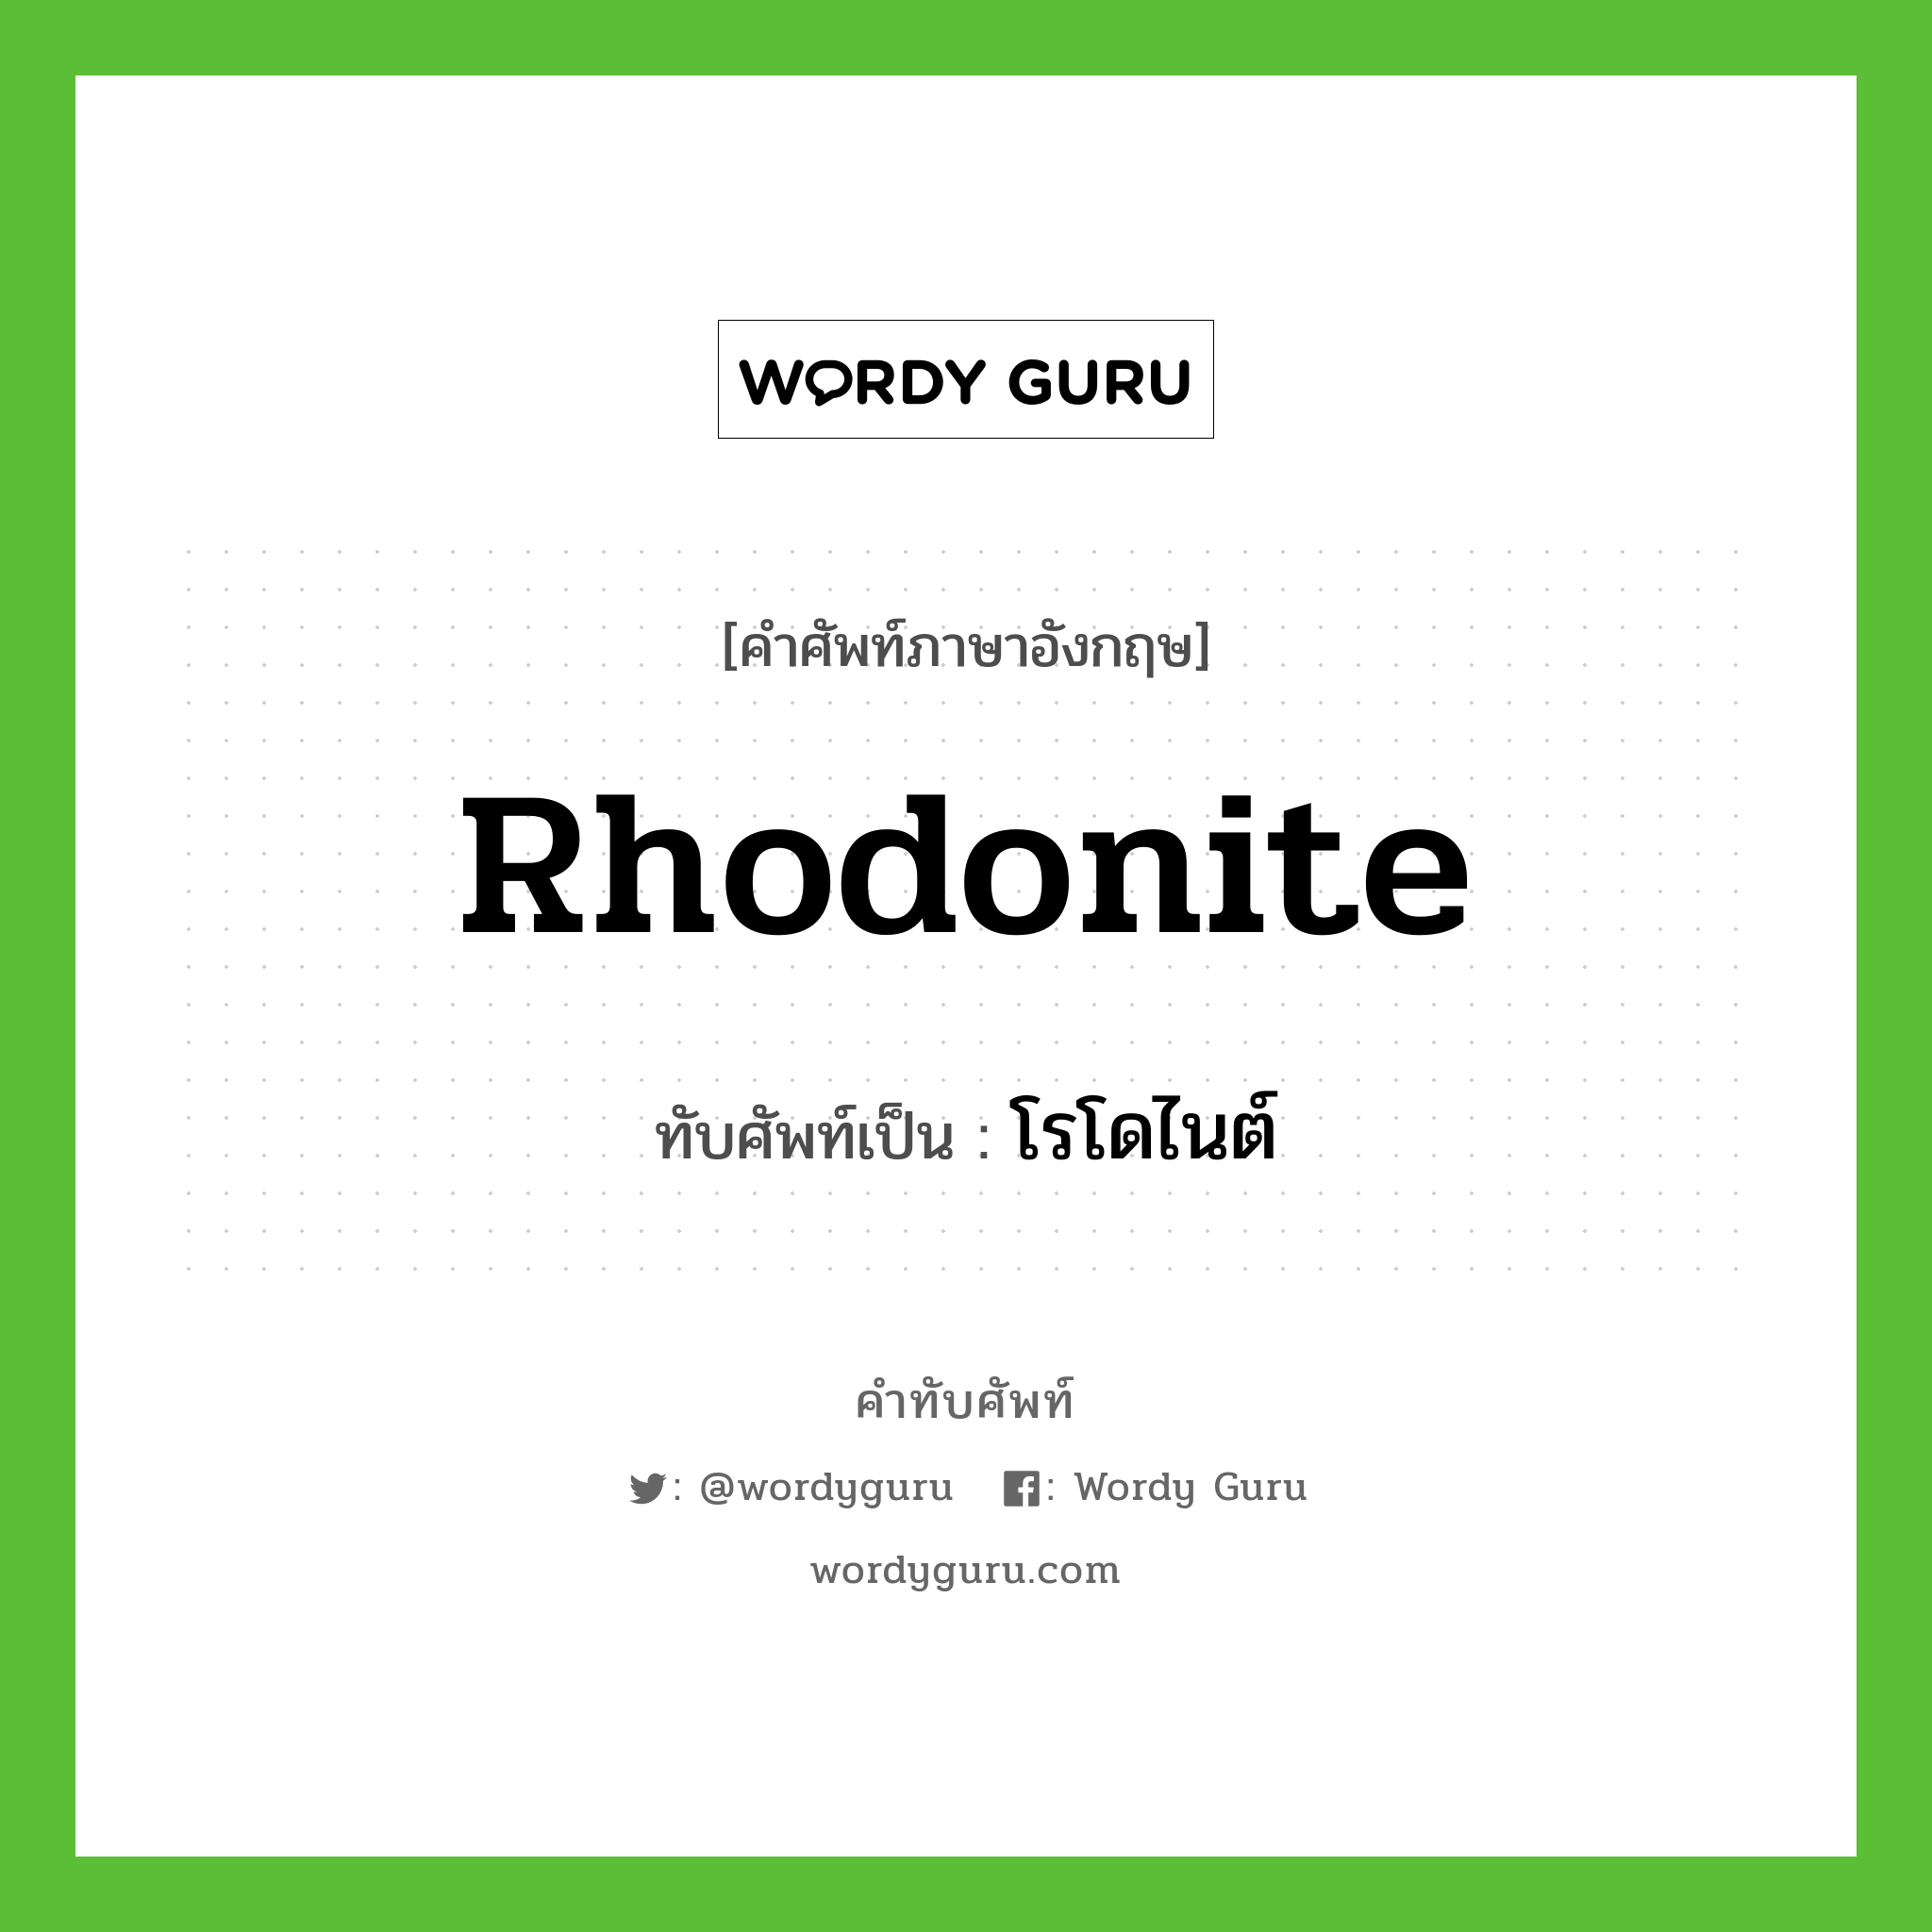 rhodonite เขียนเป็นคำไทยว่าอะไร?, คำศัพท์ภาษาอังกฤษ rhodonite ทับศัพท์เป็น โรโดไนต์